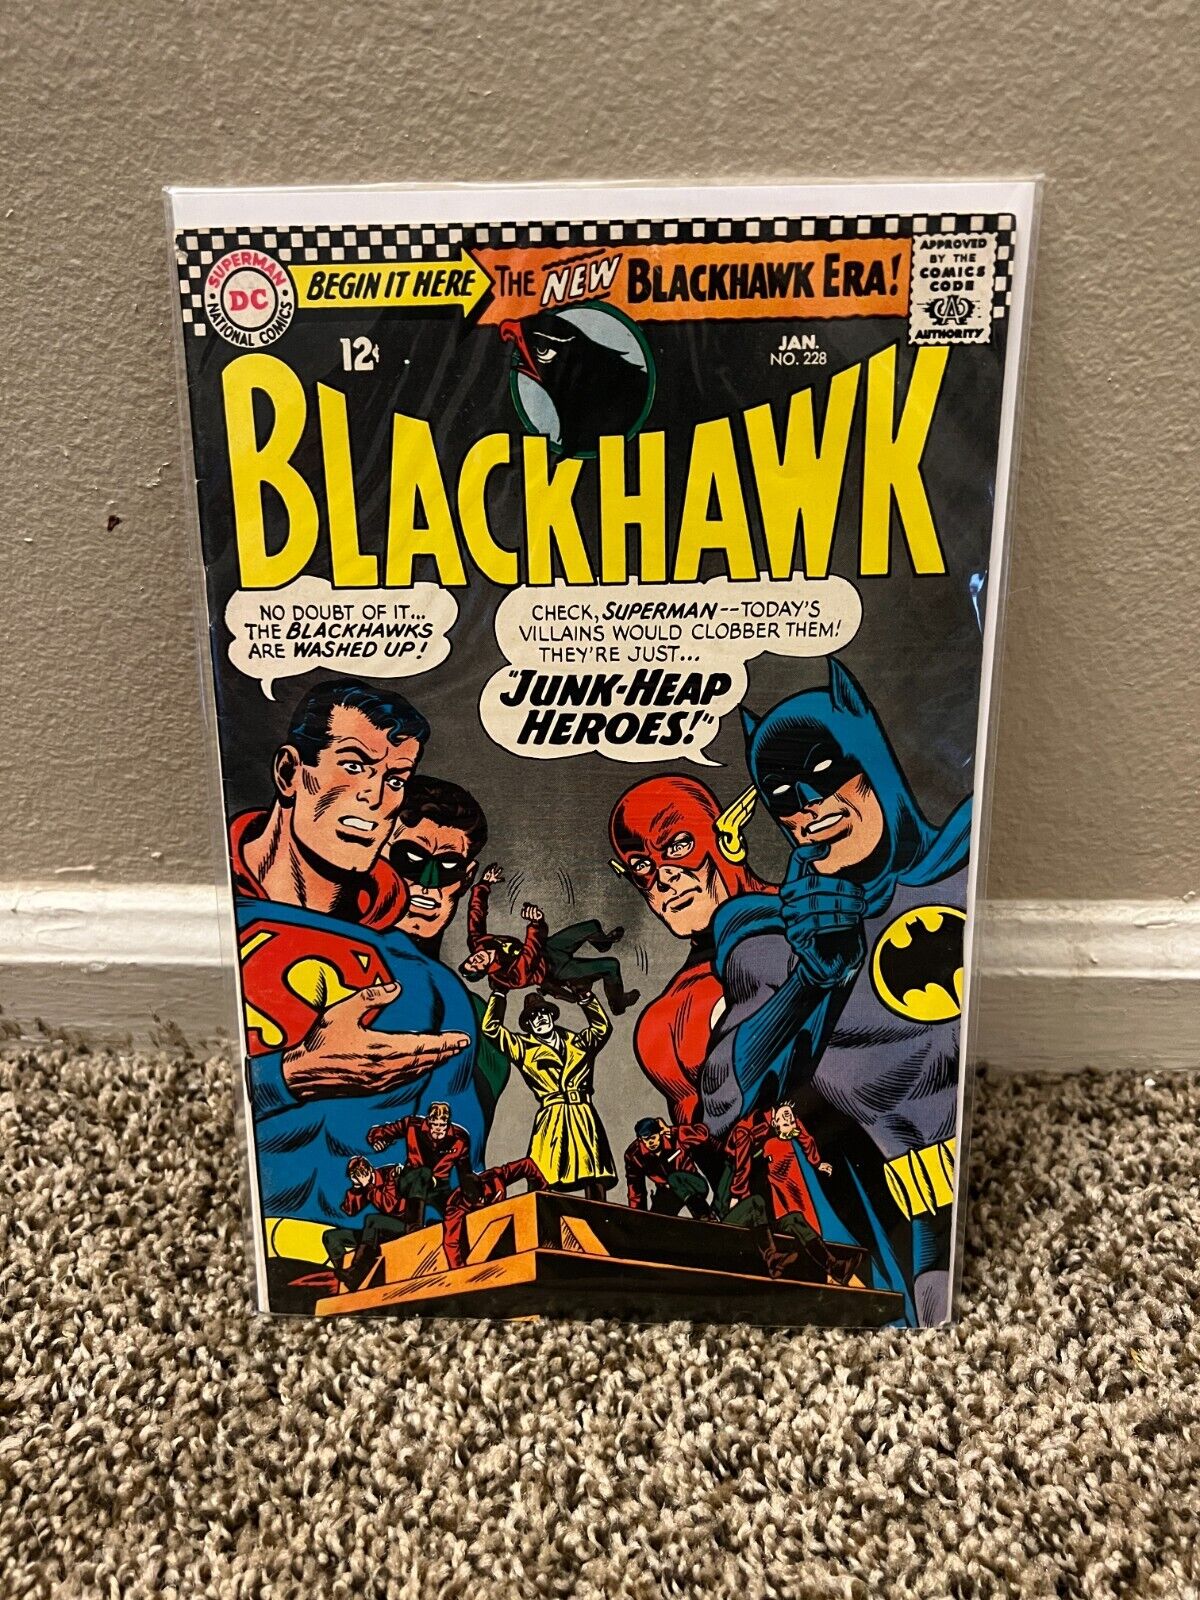 Blackhawk #228 Justice League Batman Superman Flash Silver Age DC Comic 1967